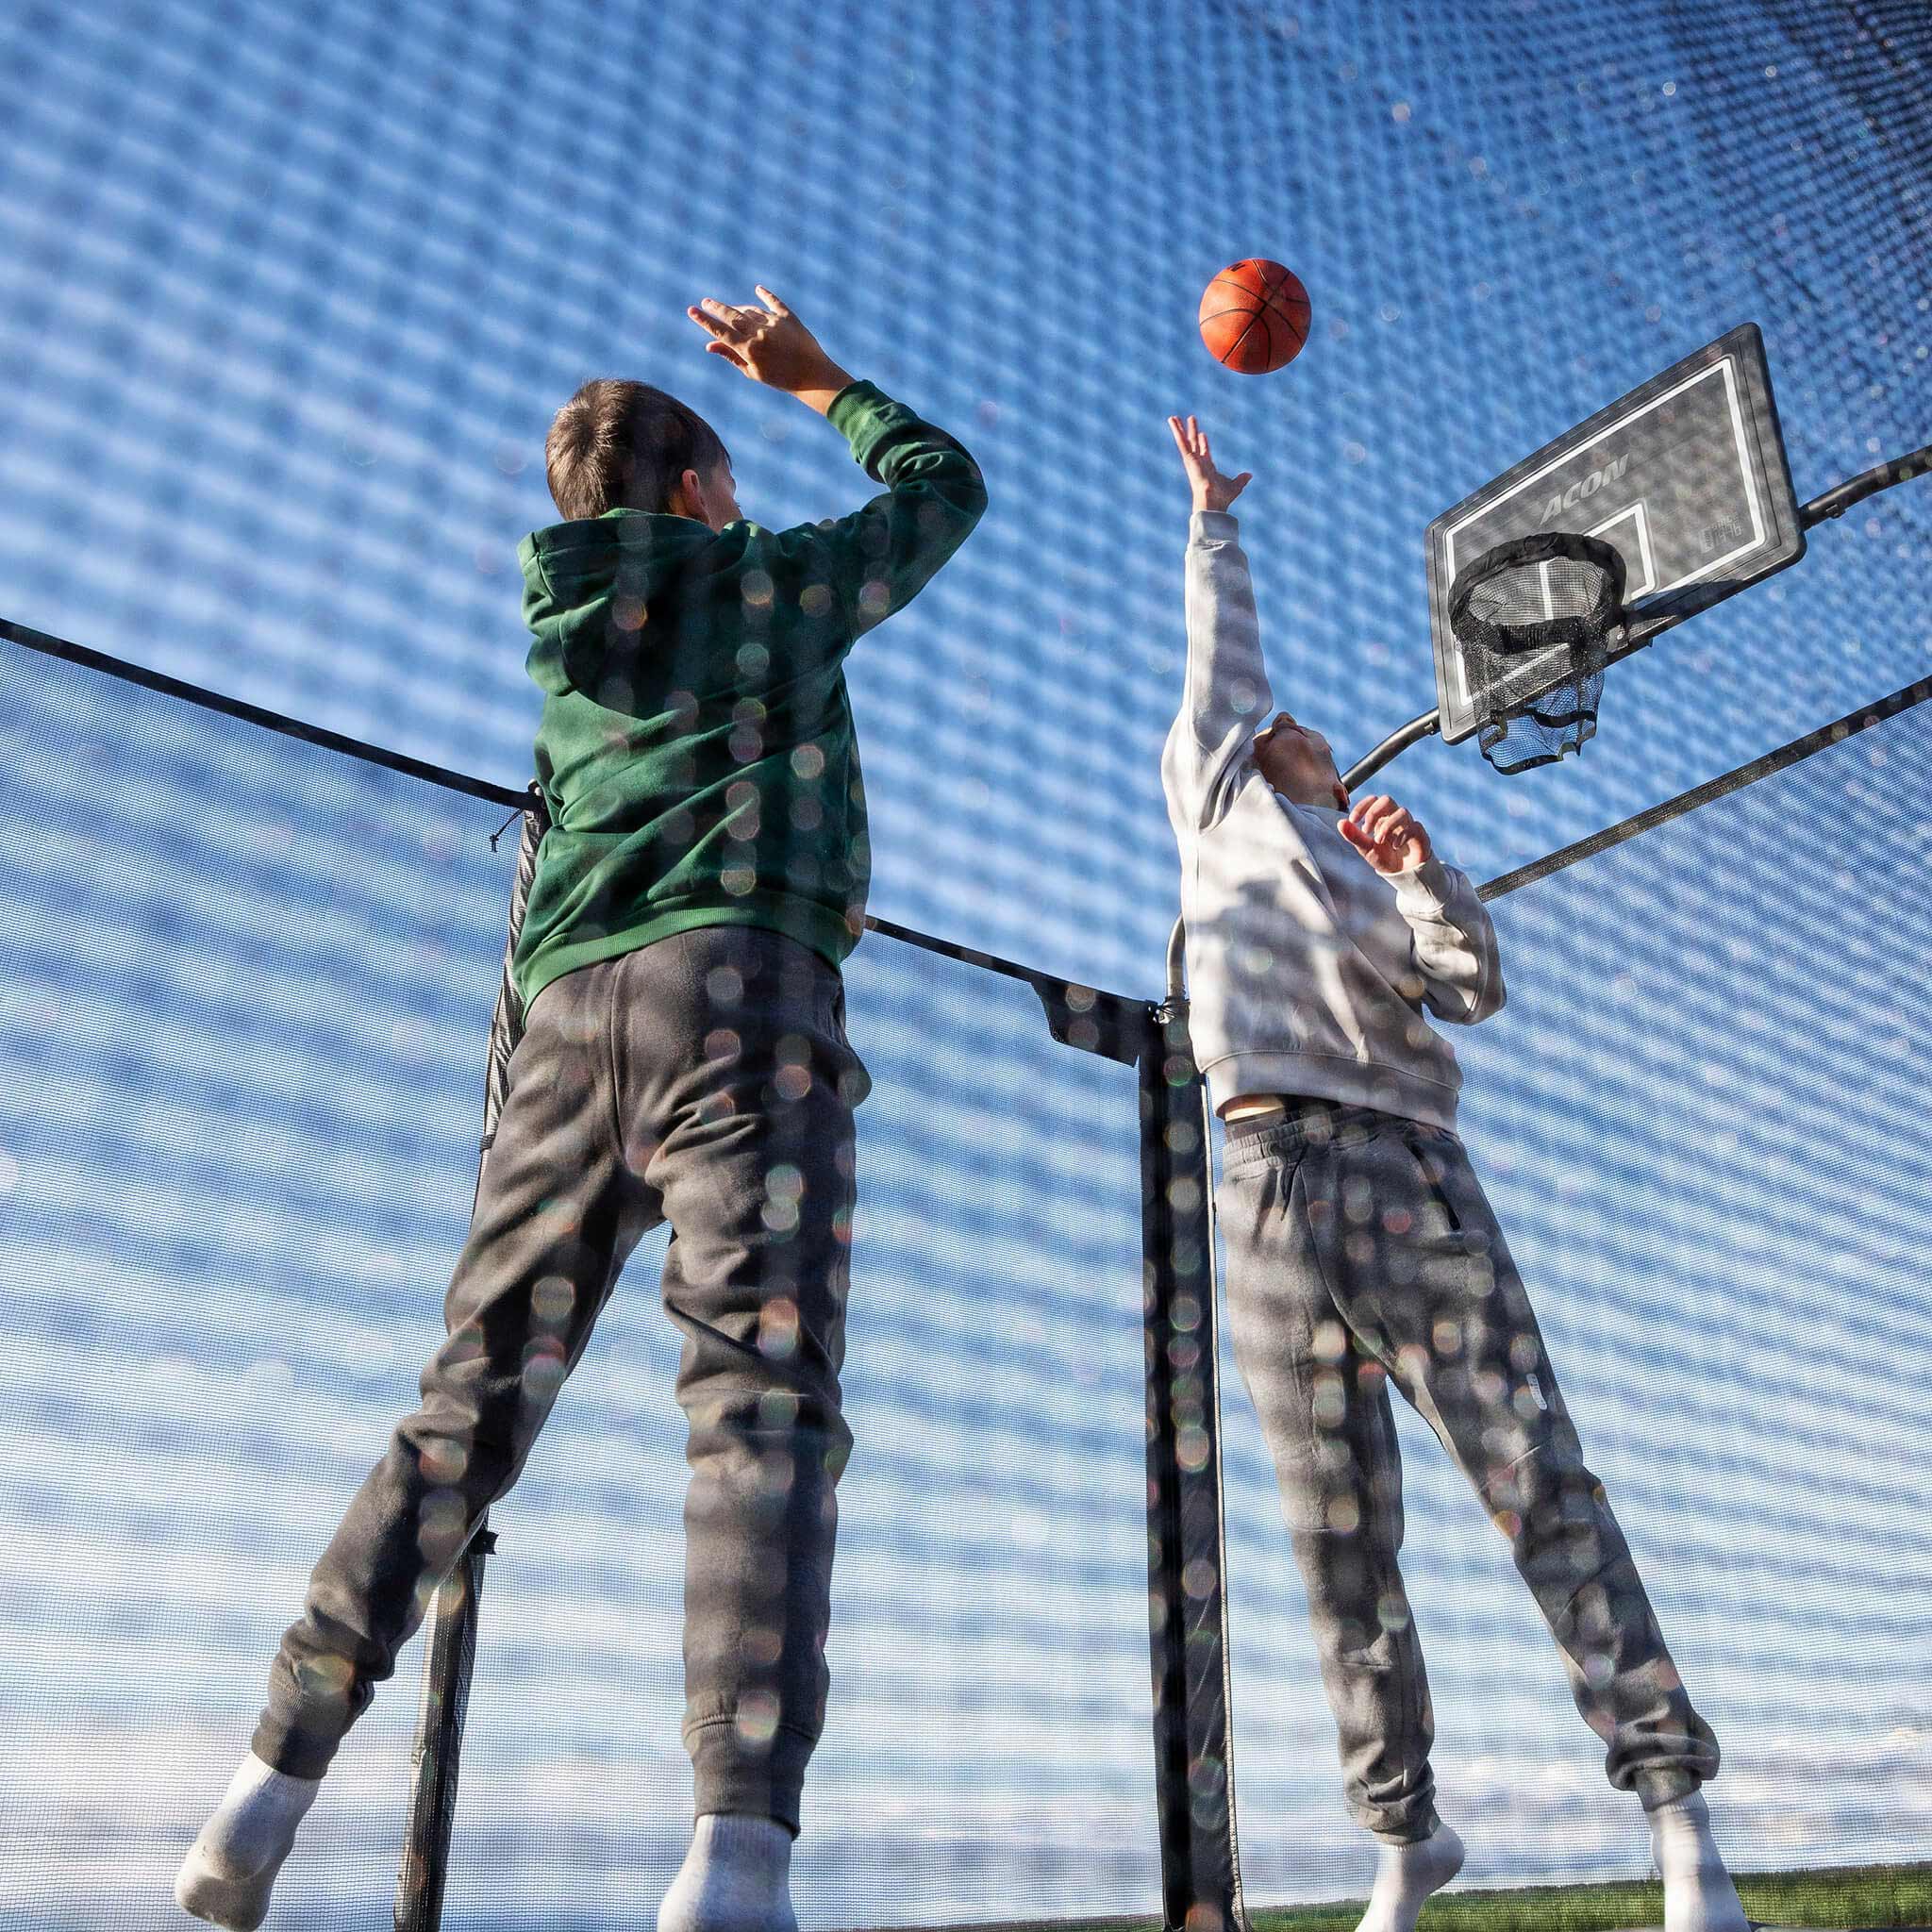 Deux garçons jouent au basket sur le trampoline Acon X.